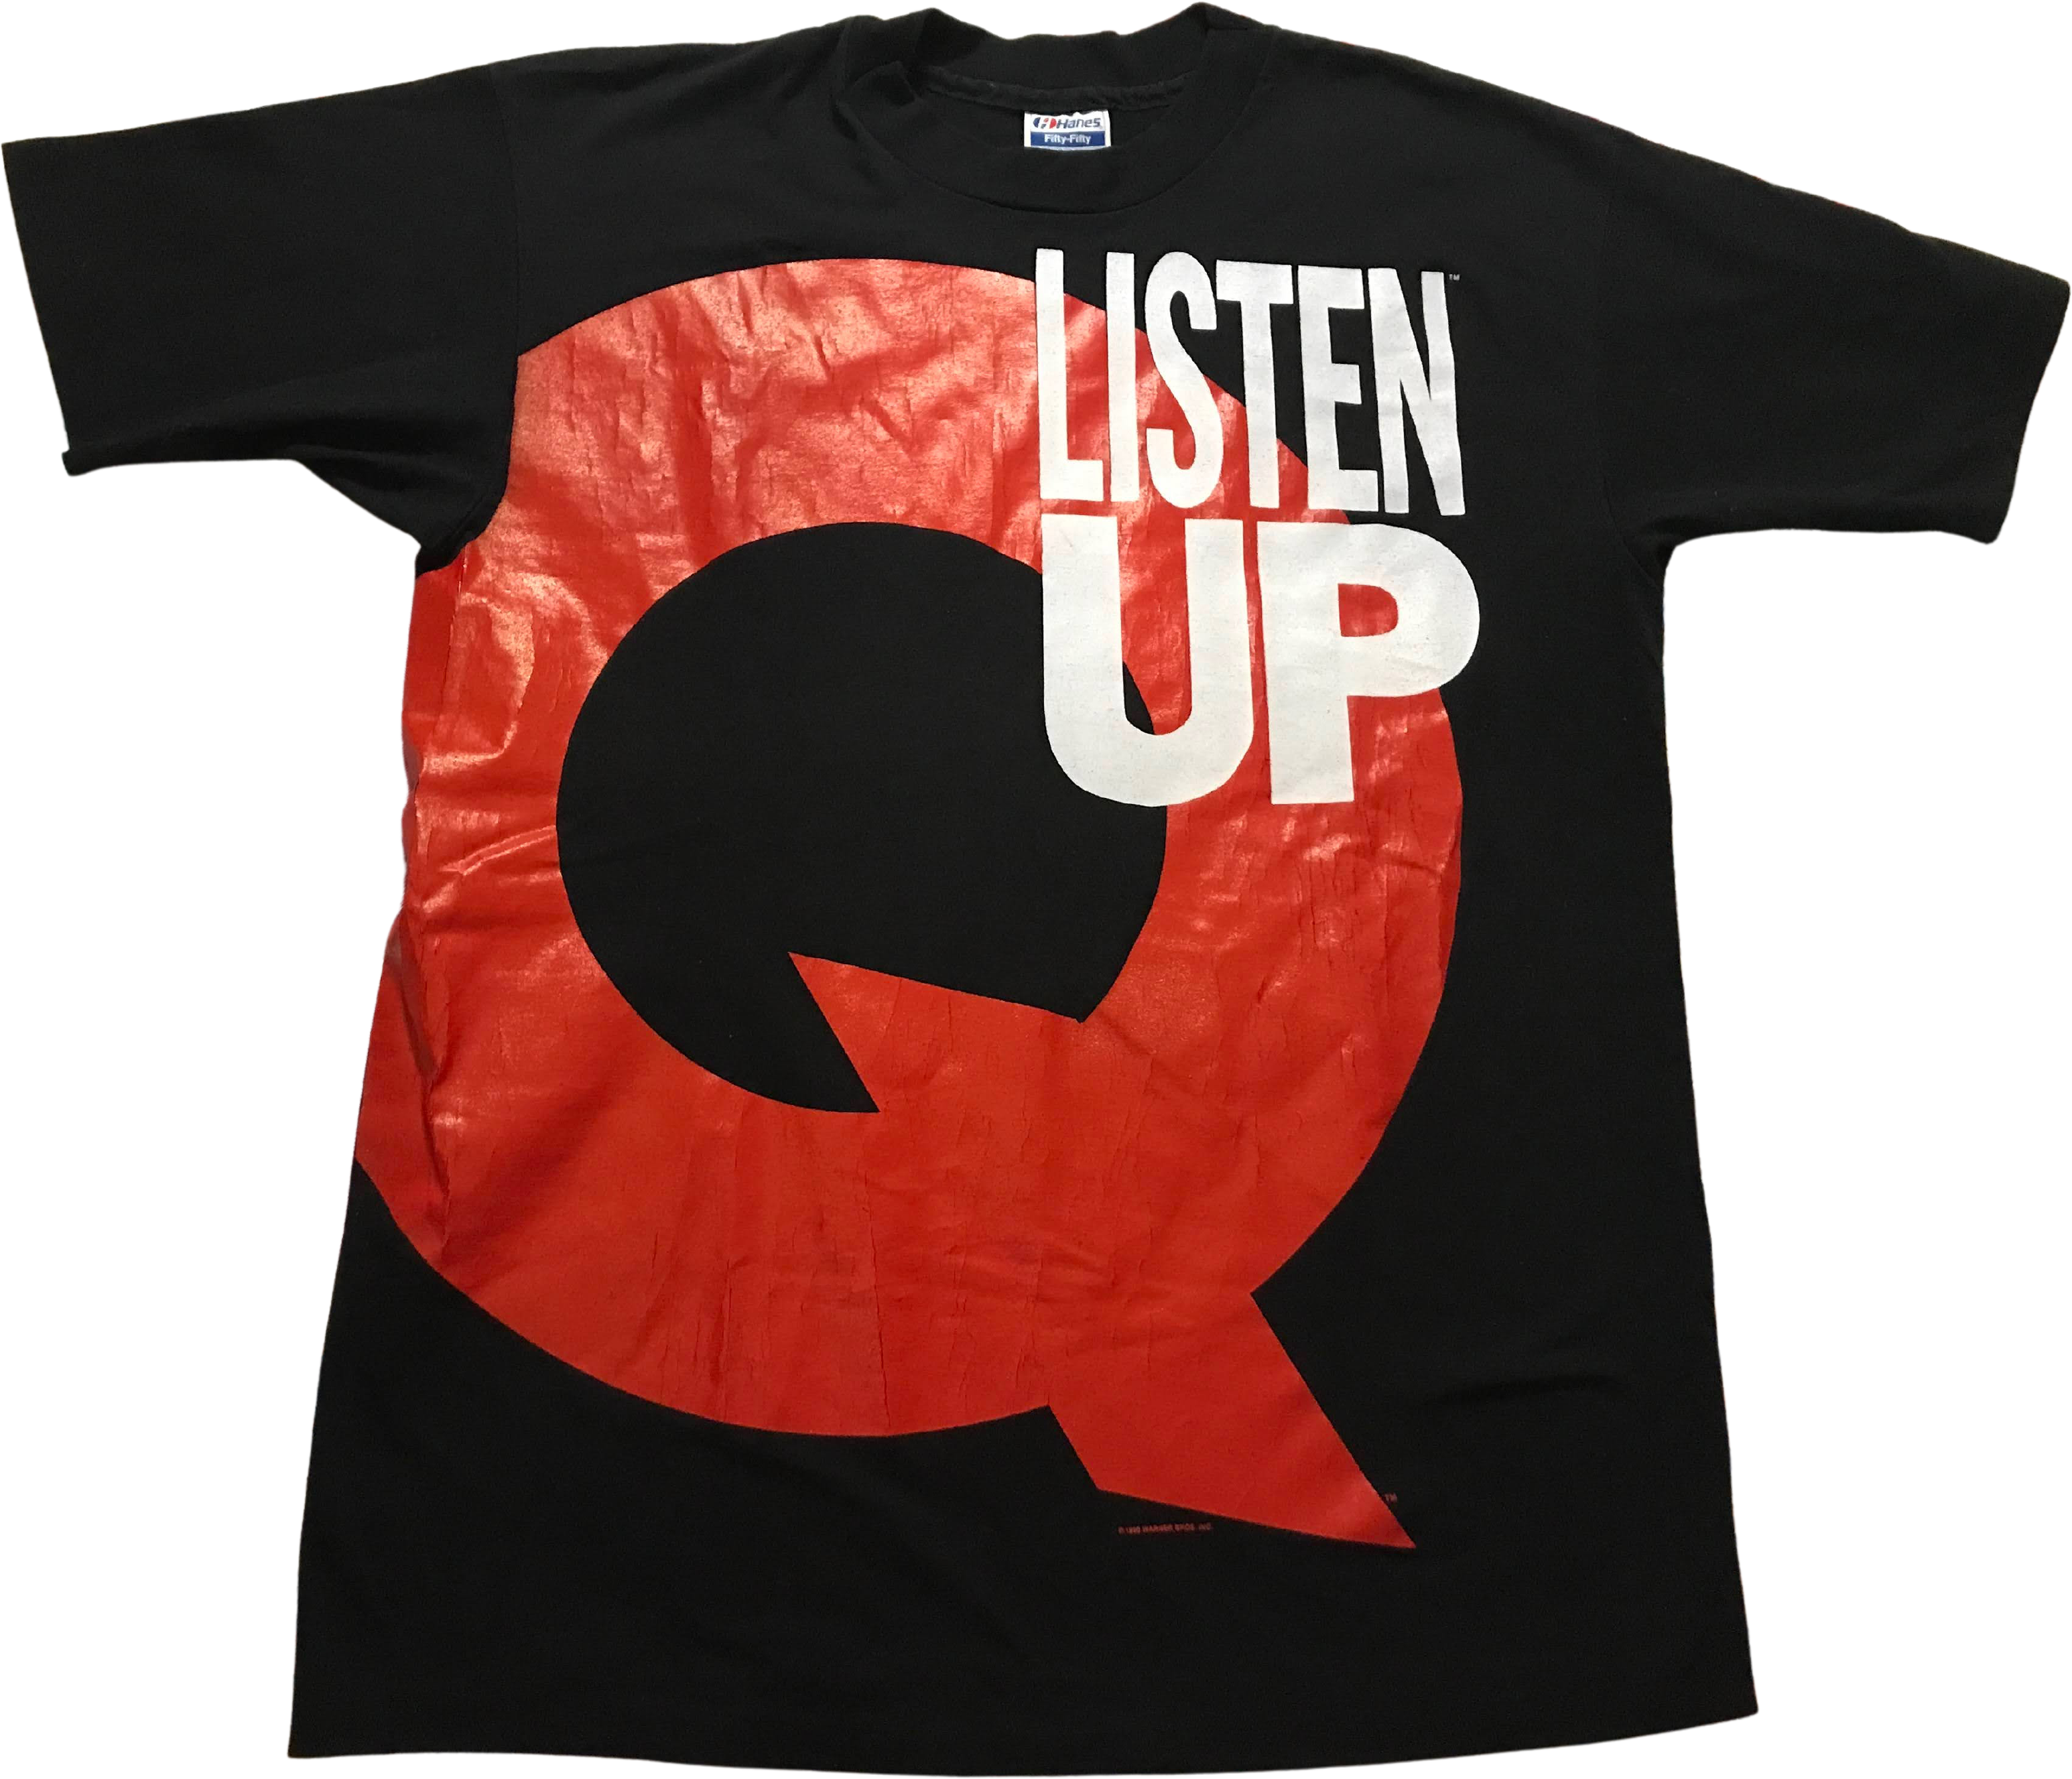 Vintage 80's/90's Quincy Jones Listen Up Q Rap R&b T-shirt by